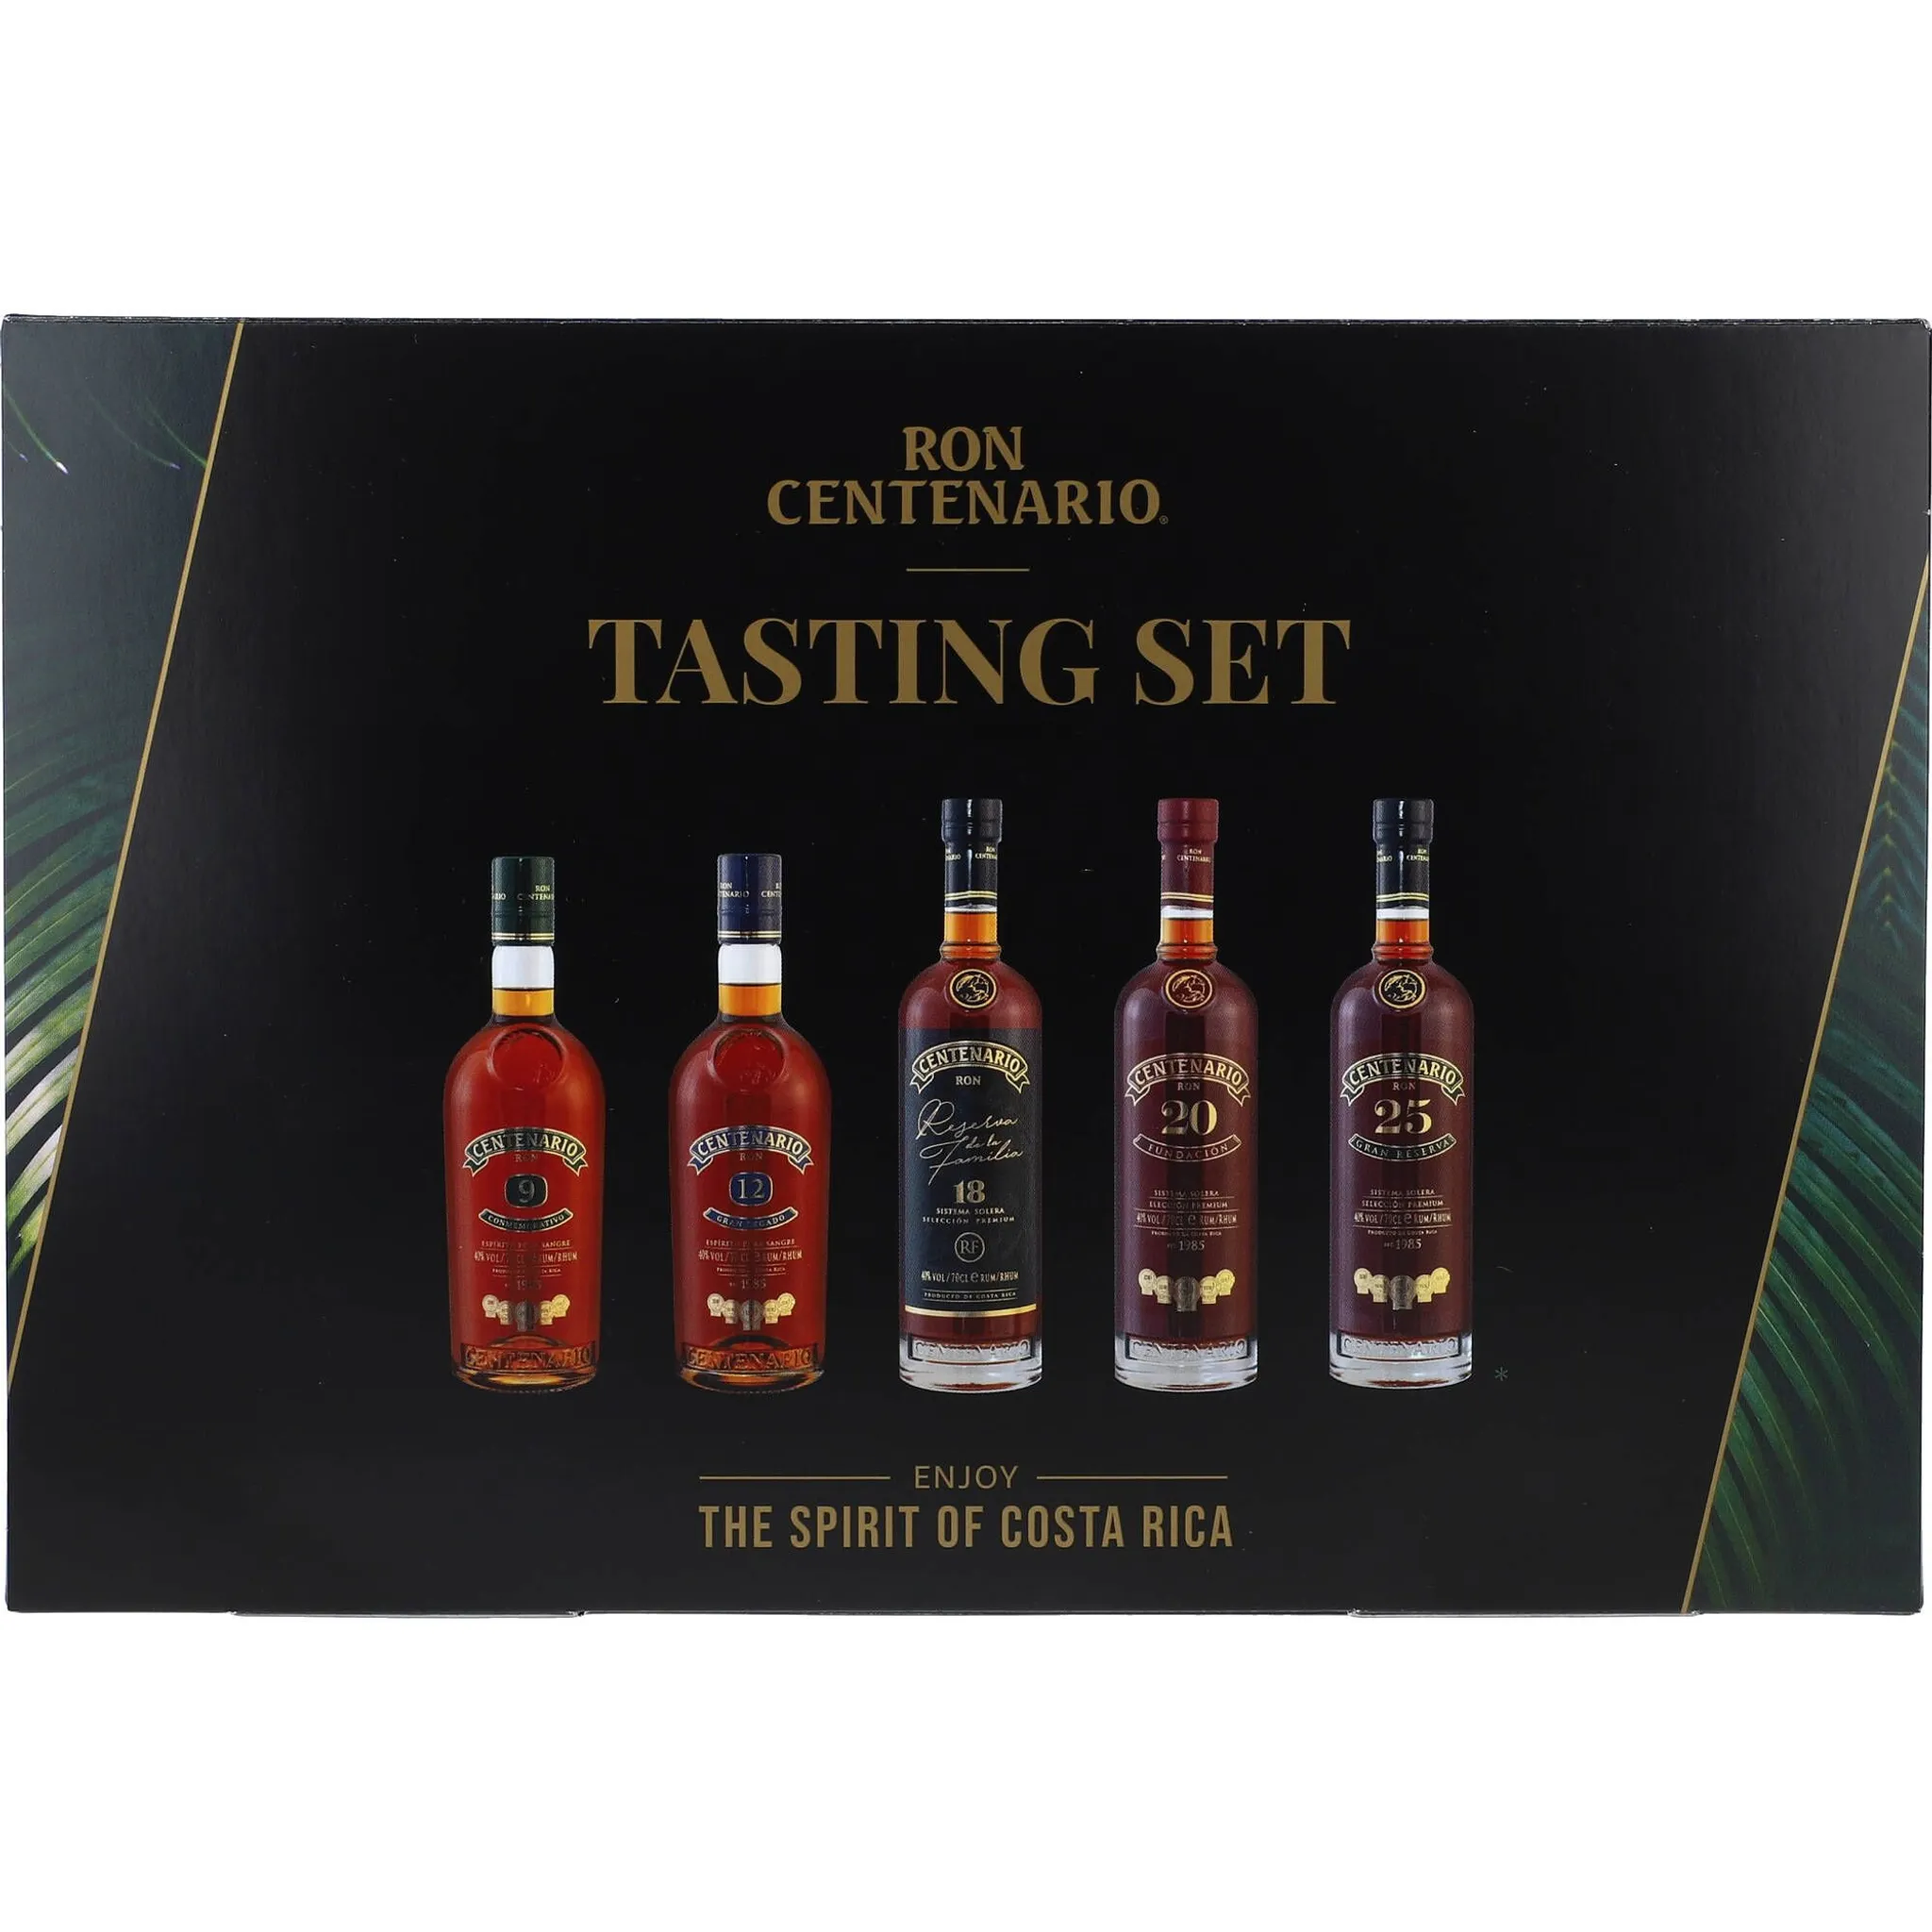 Rum Tasting beinhaltet Centenario | Ron Set